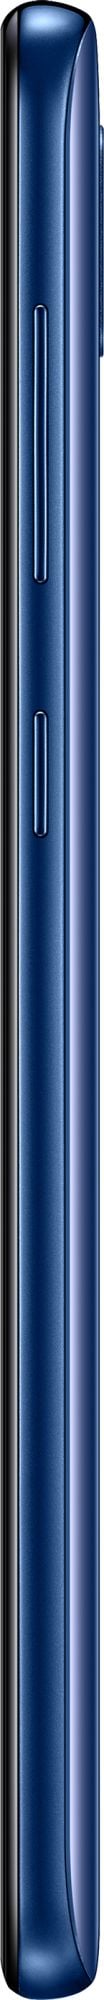 Samsung Galaxy A20 32GB Blue